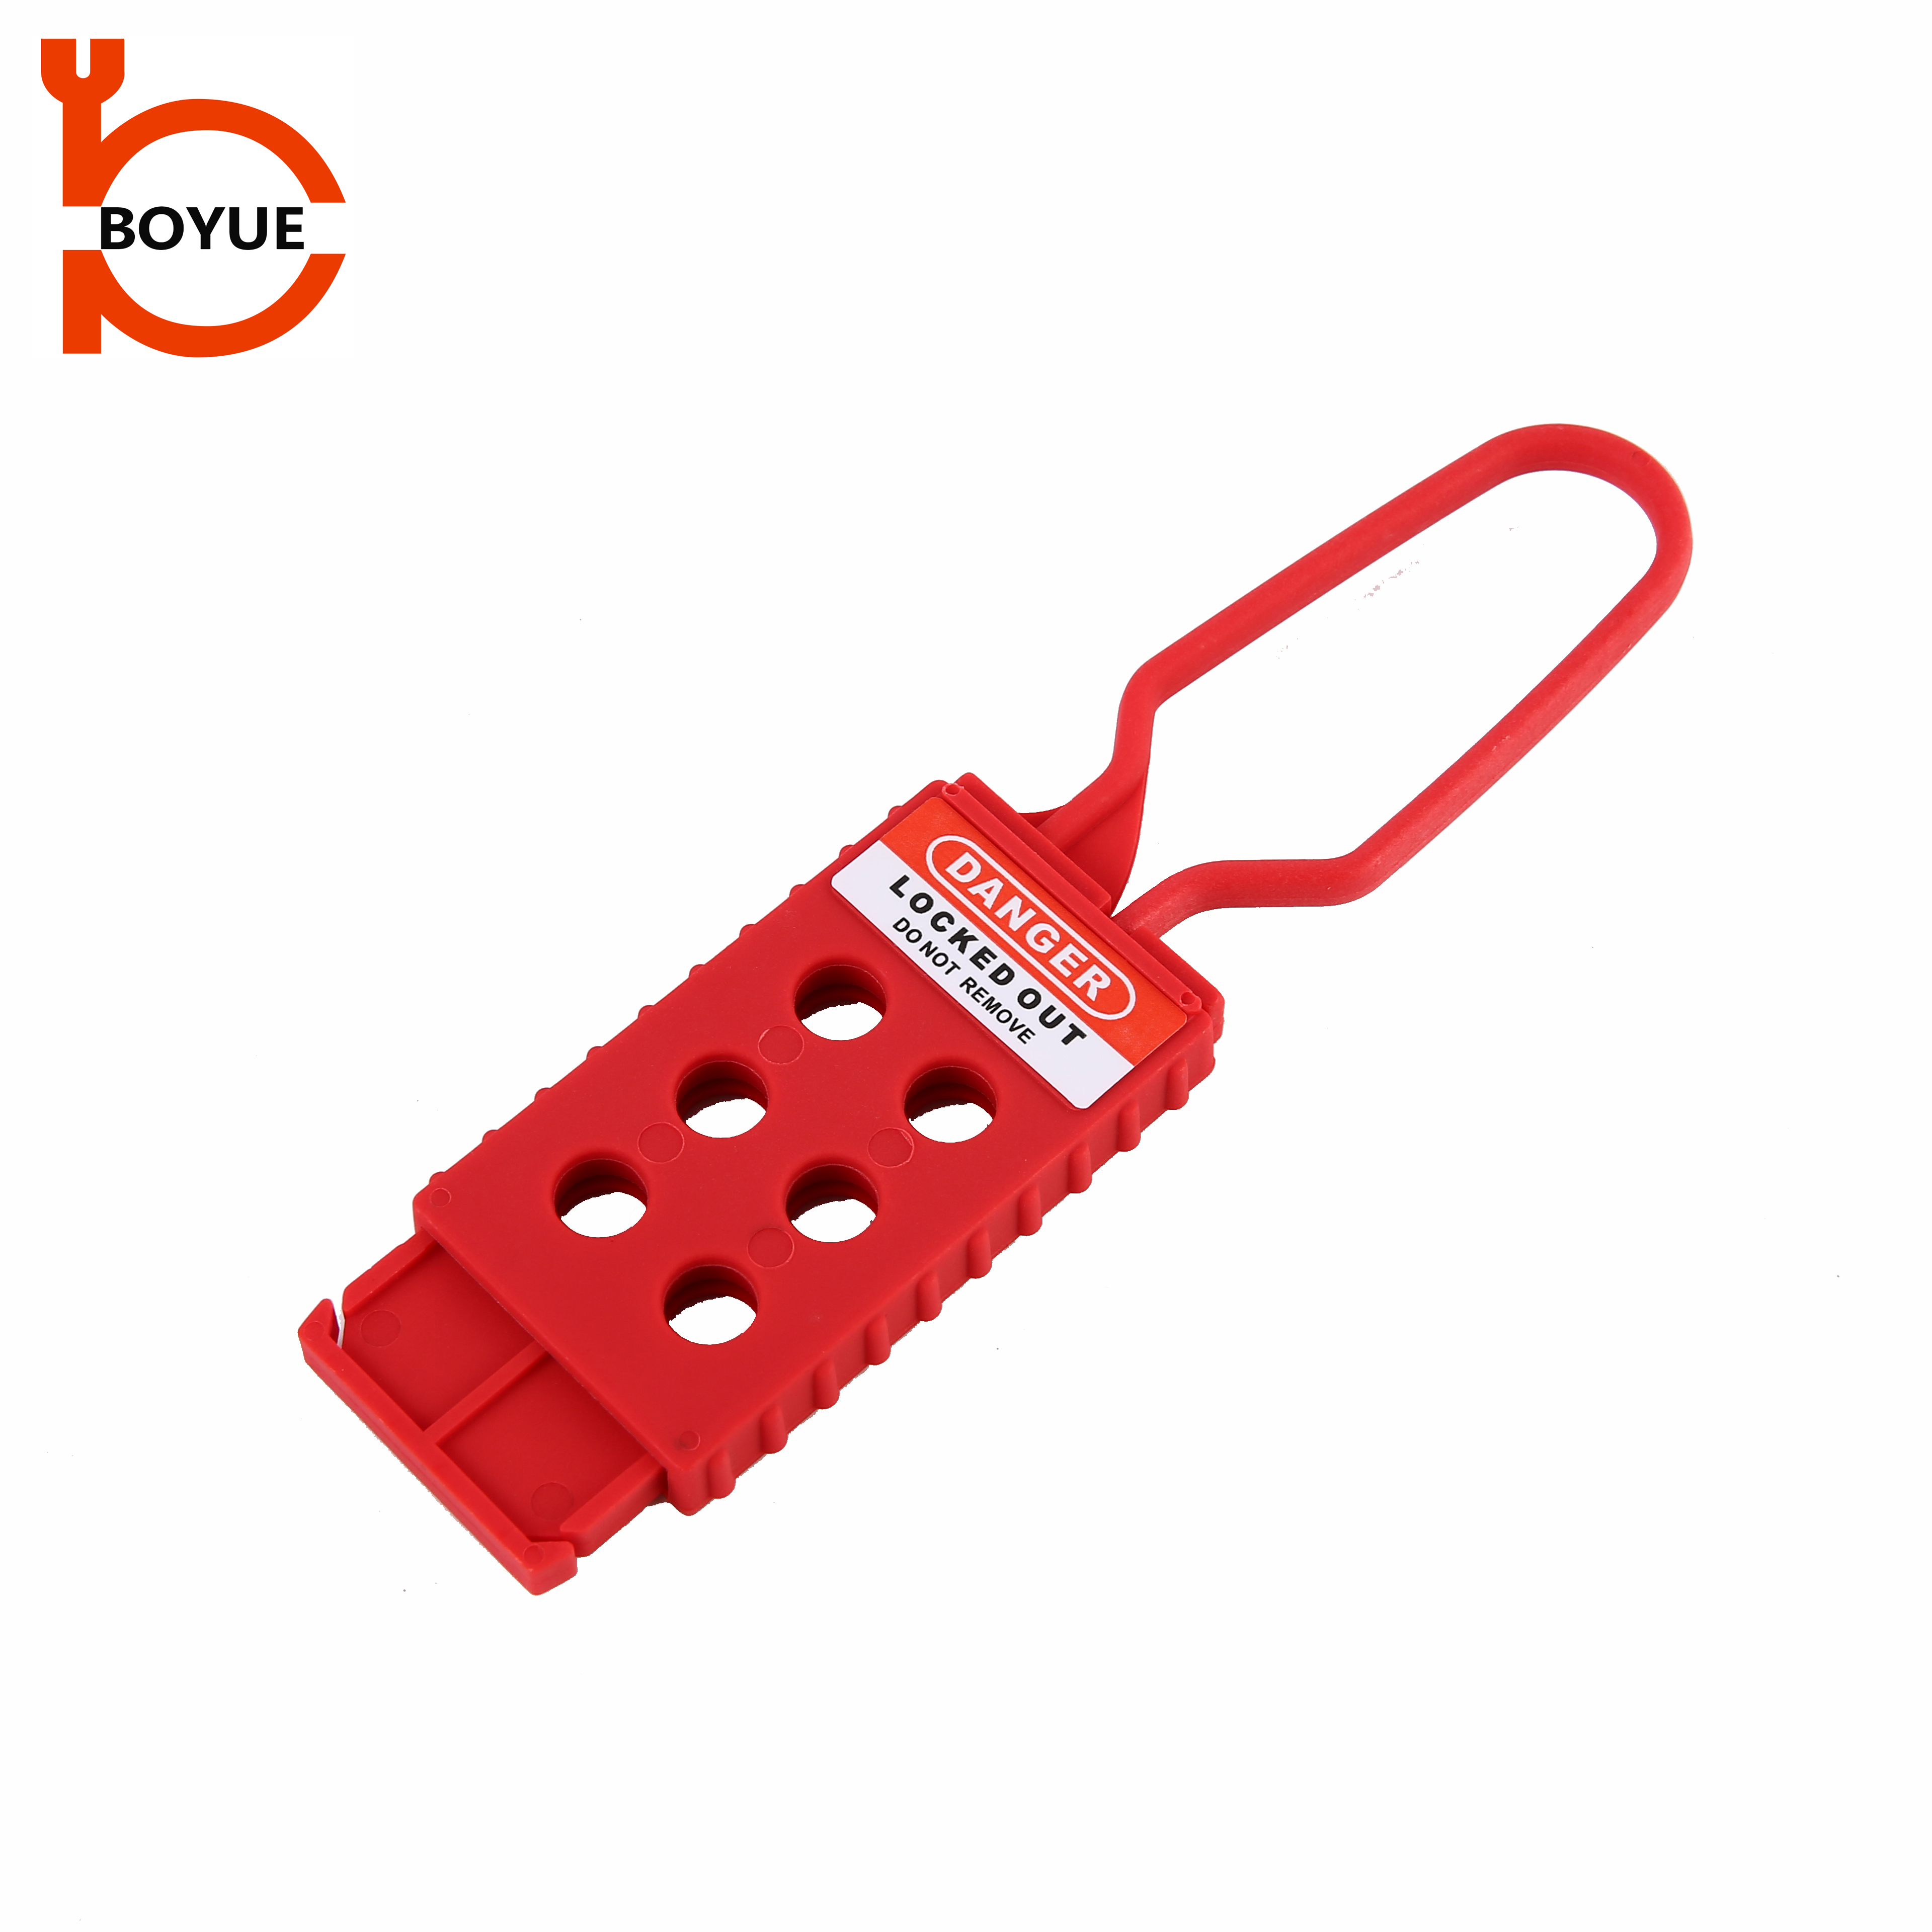 Өндөр чанартай тусгаарлагдсан дөнгө Nylon түгжээтэй Tagout Hasp Lock HN-01